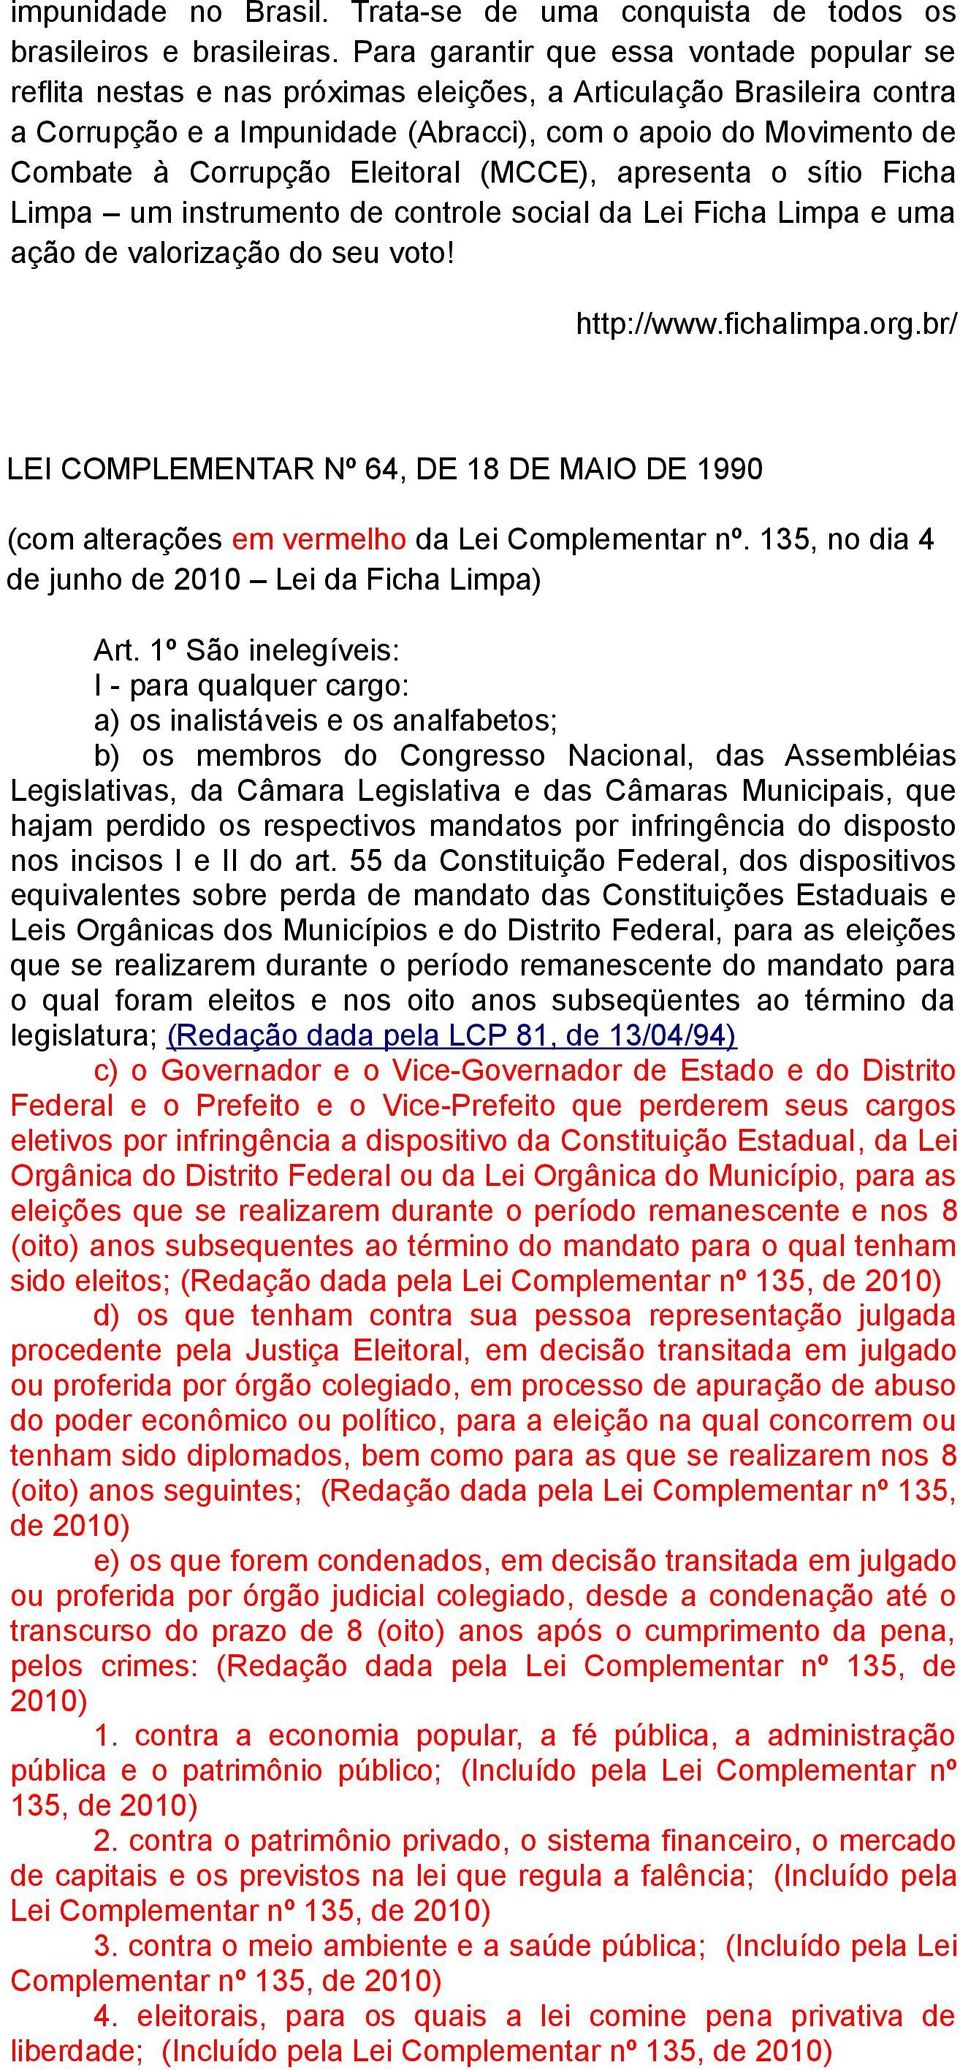 Eleitoral (MCCE), apresenta o sítio Ficha Limpa um instrumento de controle social da Lei Ficha Limpa e uma ação de valorização do seu voto! http://www.fichalimpa.org.